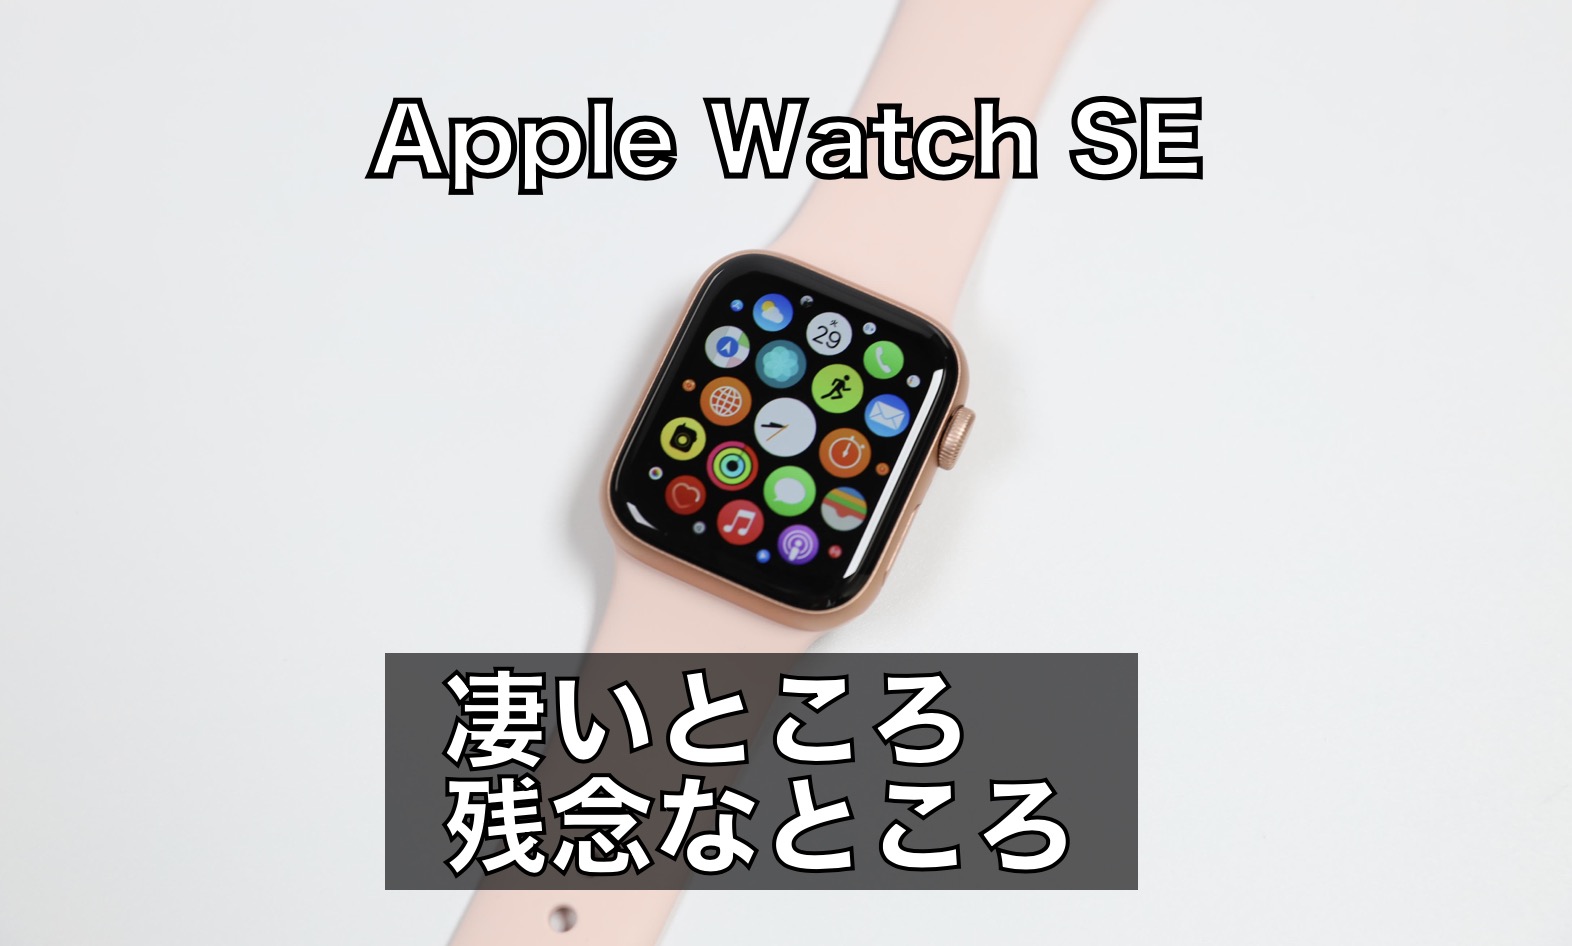 アップルウォッチSE 腕時計(デジタル) 激安買う なら pescurt.co.uk